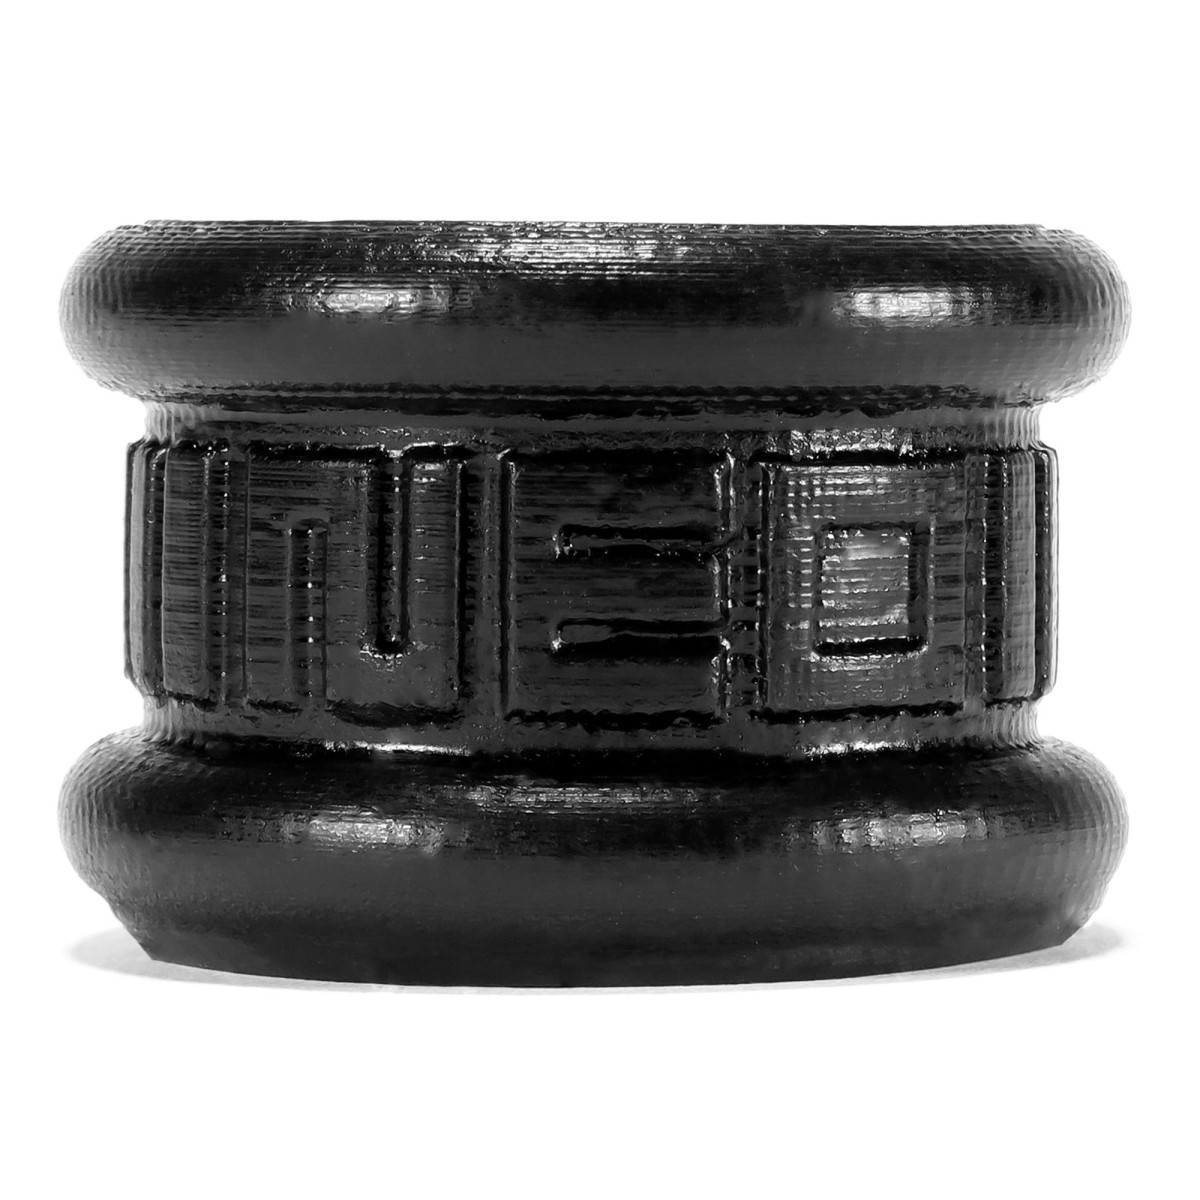 Natahovač varlat Oxballs Neo krátký černý, silikonový natahovač varlat 3,2 cm